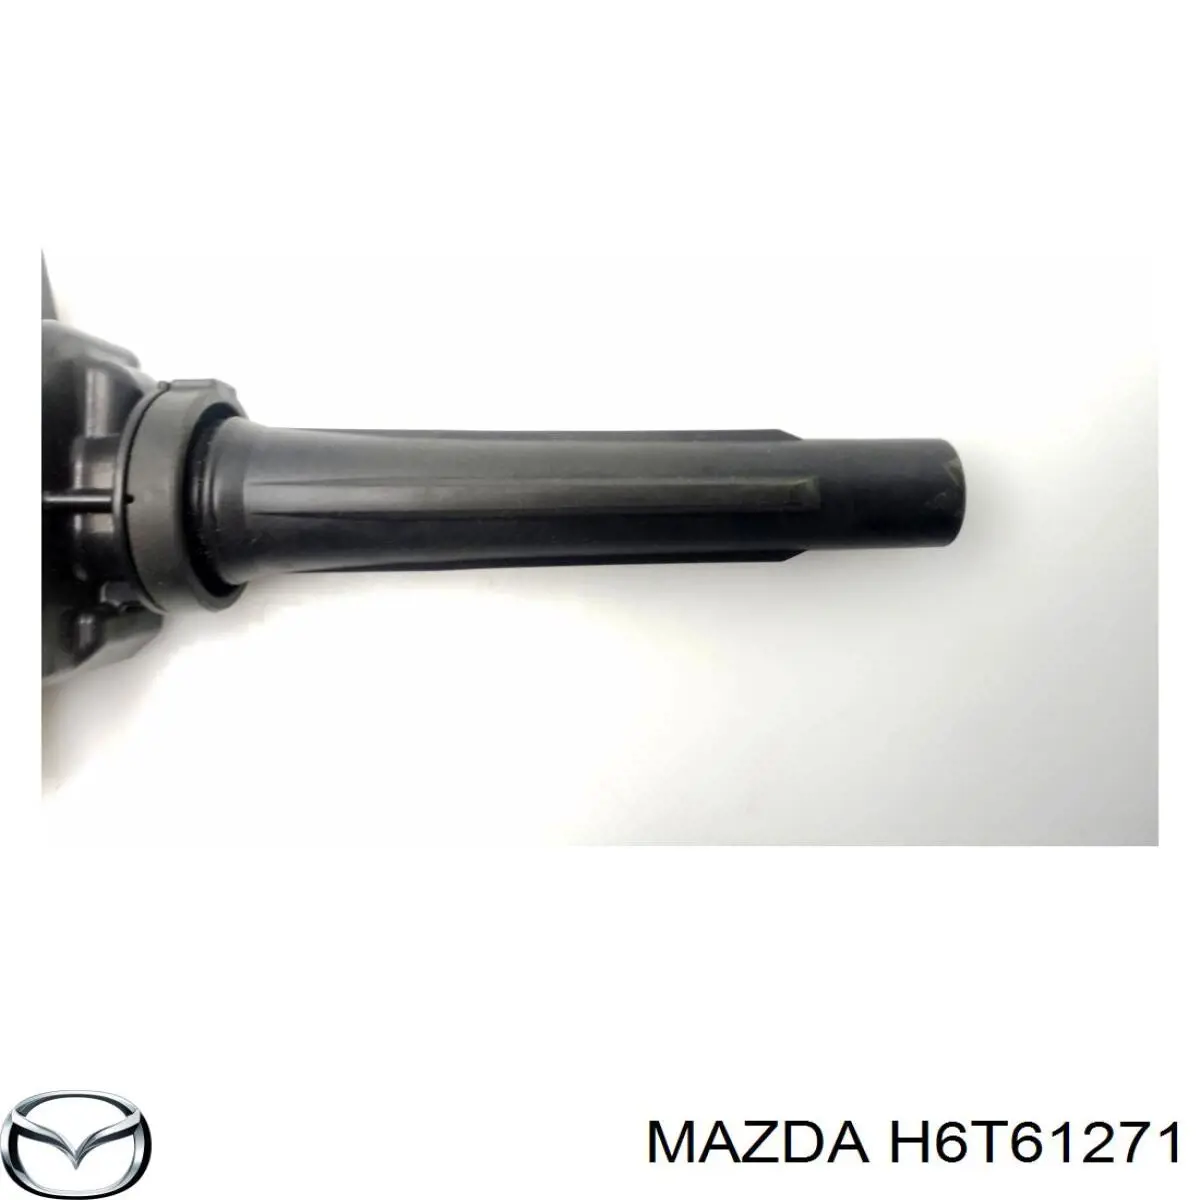 H6T61271 Mazda bobina